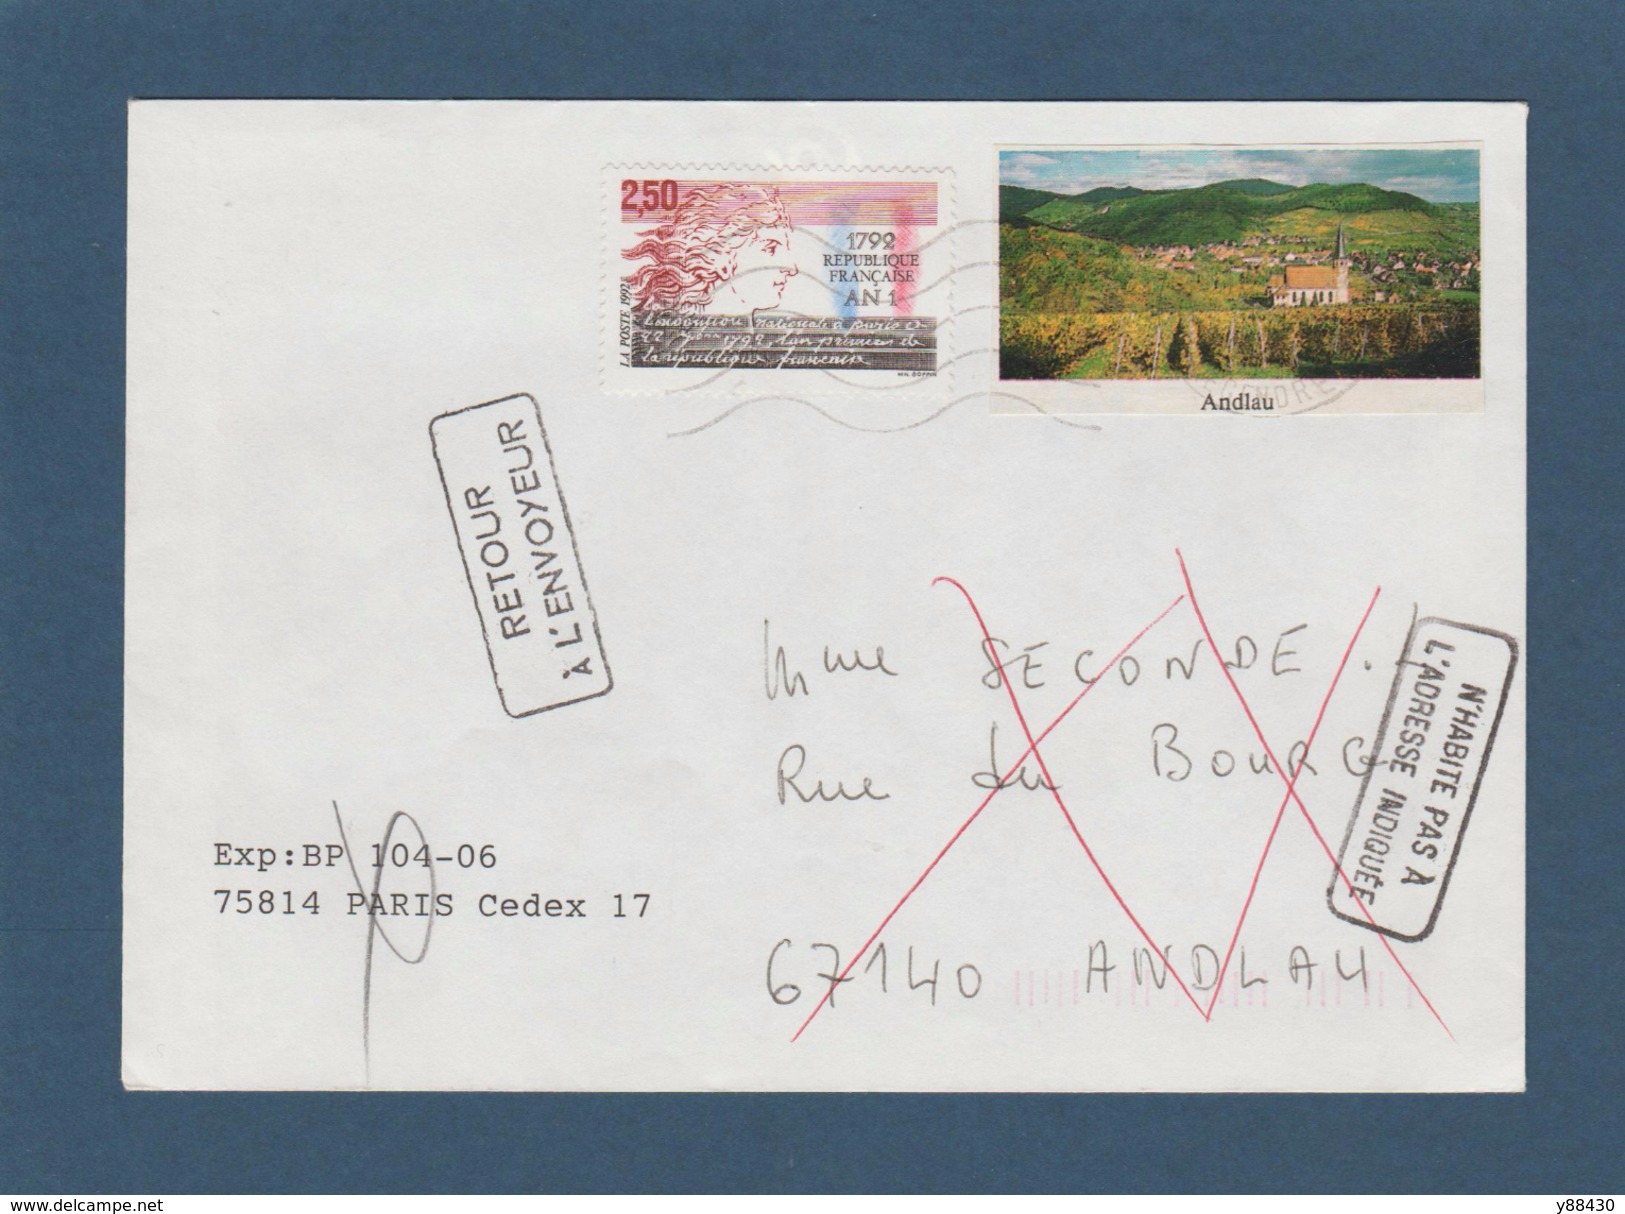 2771 De 1992 - Adresse Fantaisiste - M. SECONDE à ANDLAU. 67 - Retour Cachet De Andlau - Voir 2 Scannes - Used Stamps